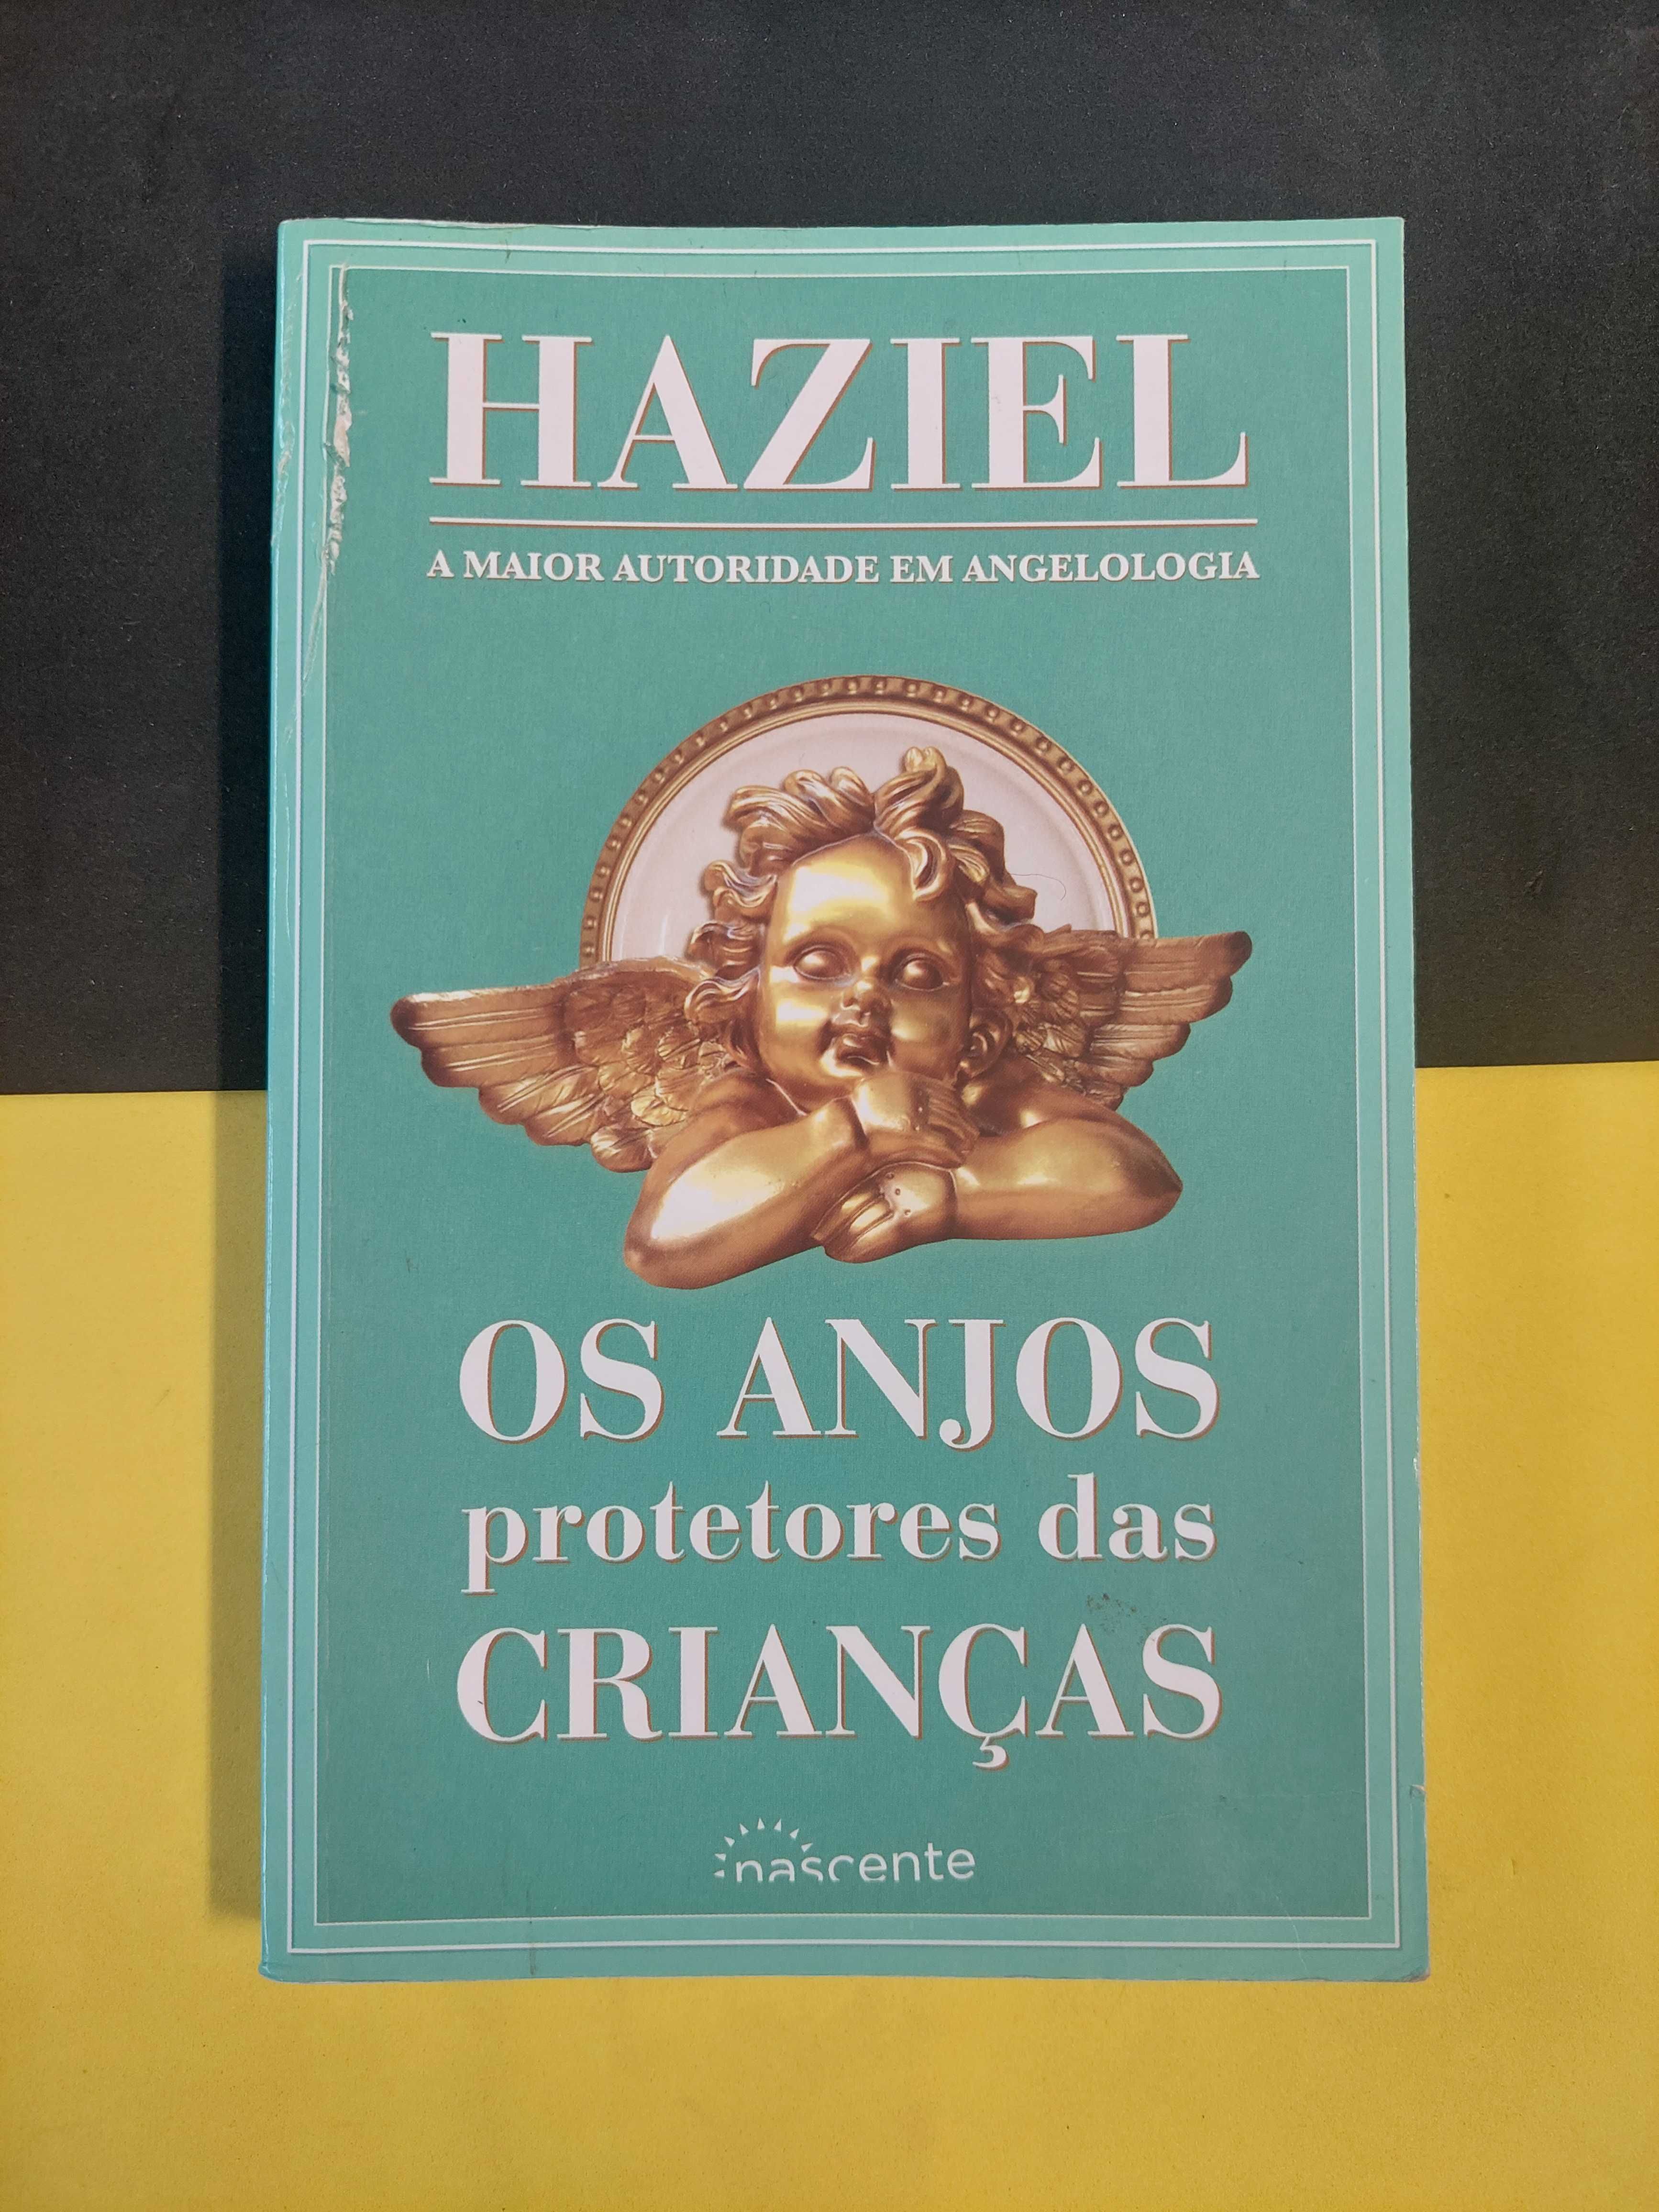 Haziel - Os anjos protetores das crianças